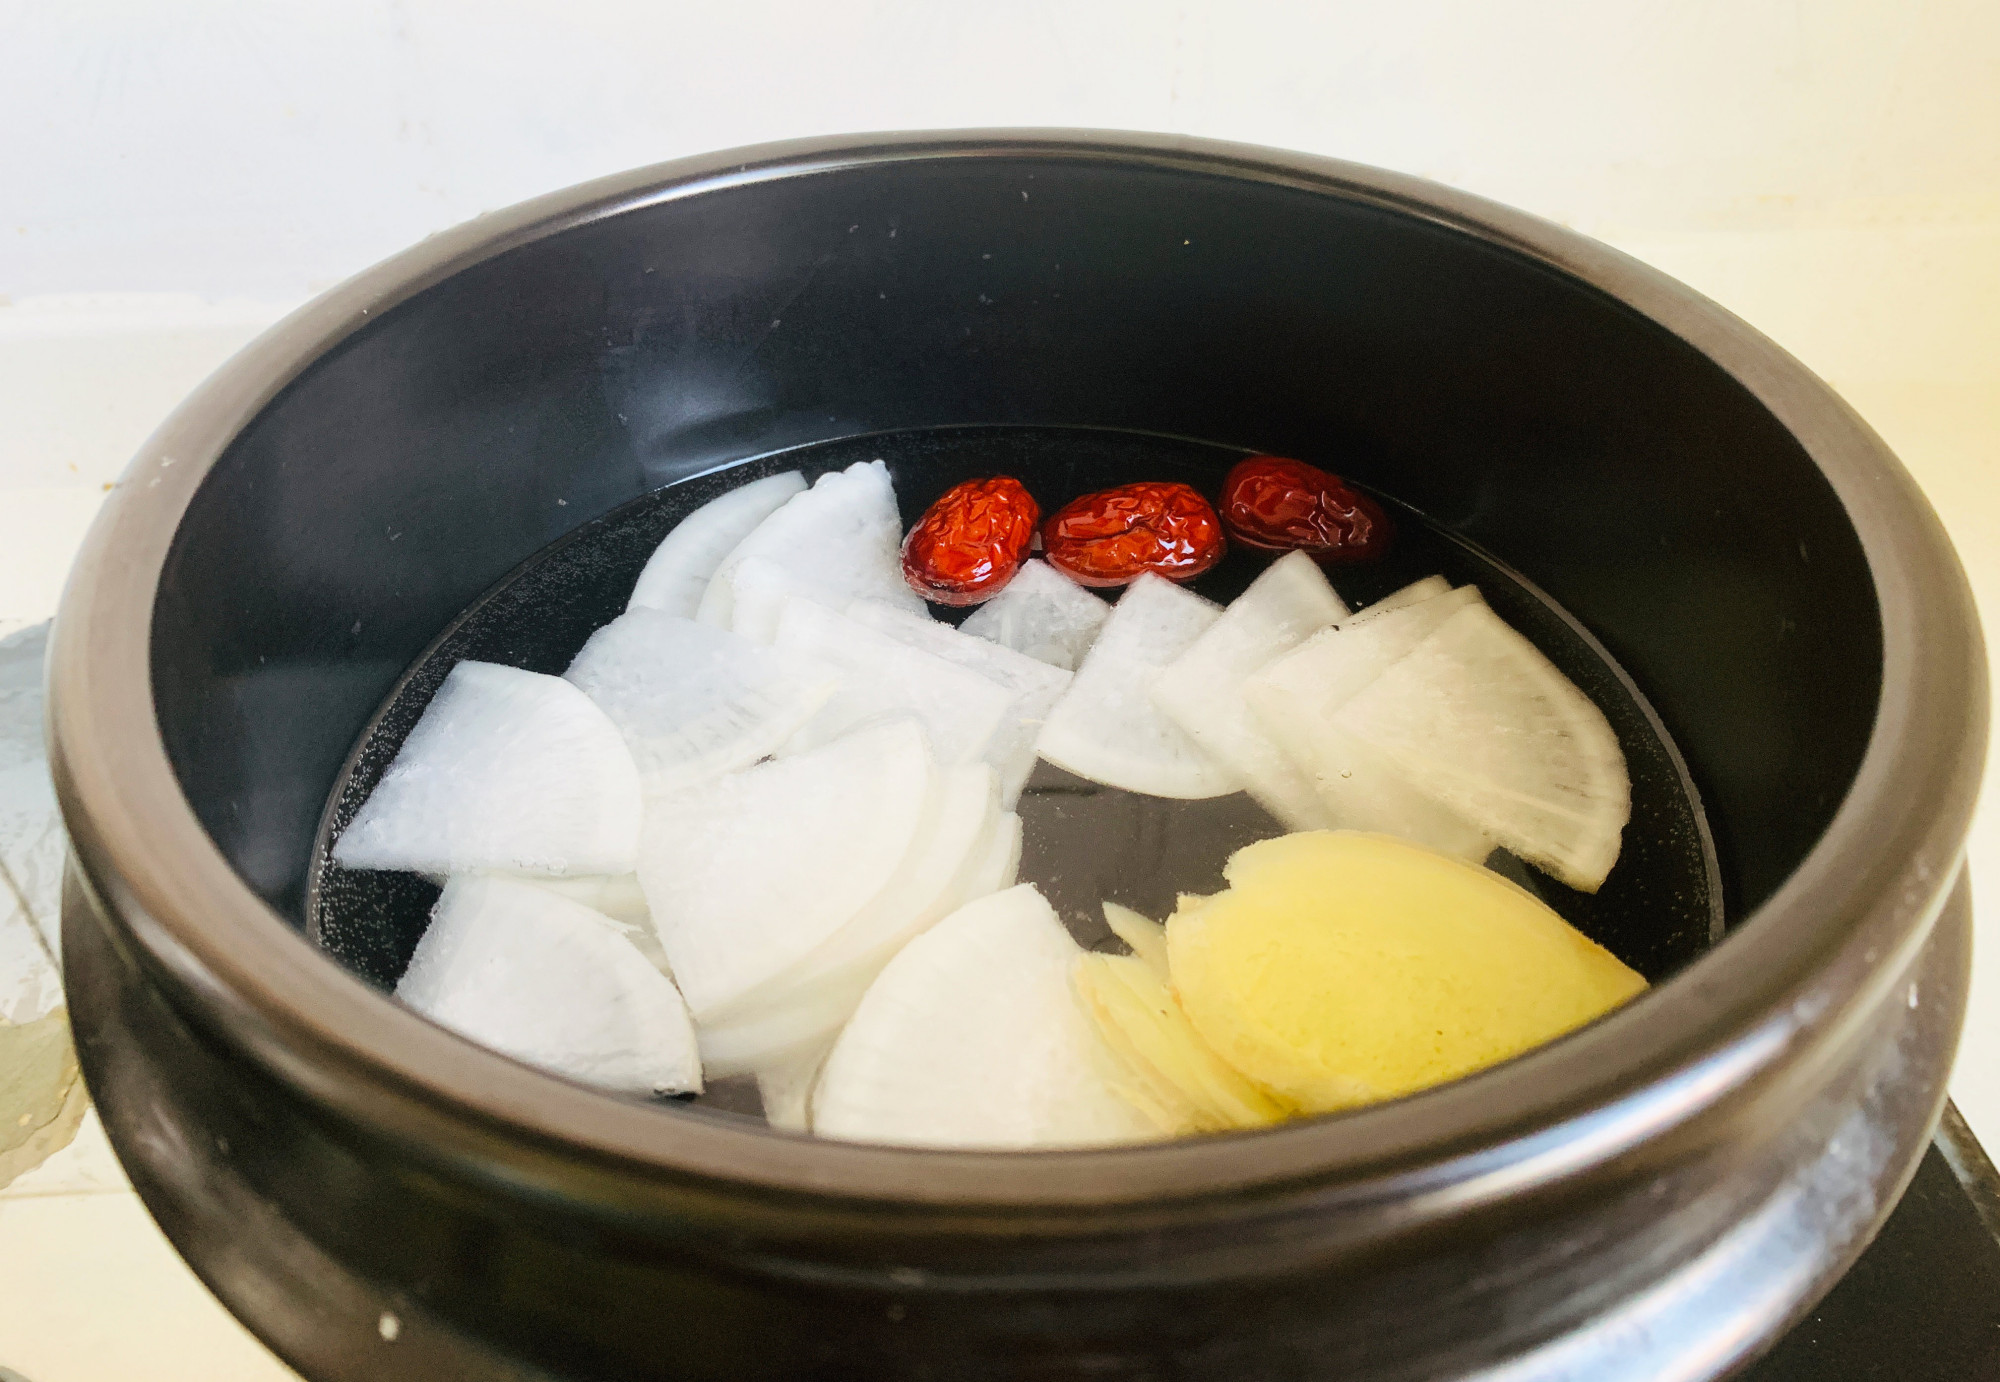 白萝卜加生姜煮水,作用太神奇了,寒冬来临,忍不住分享给朋友们